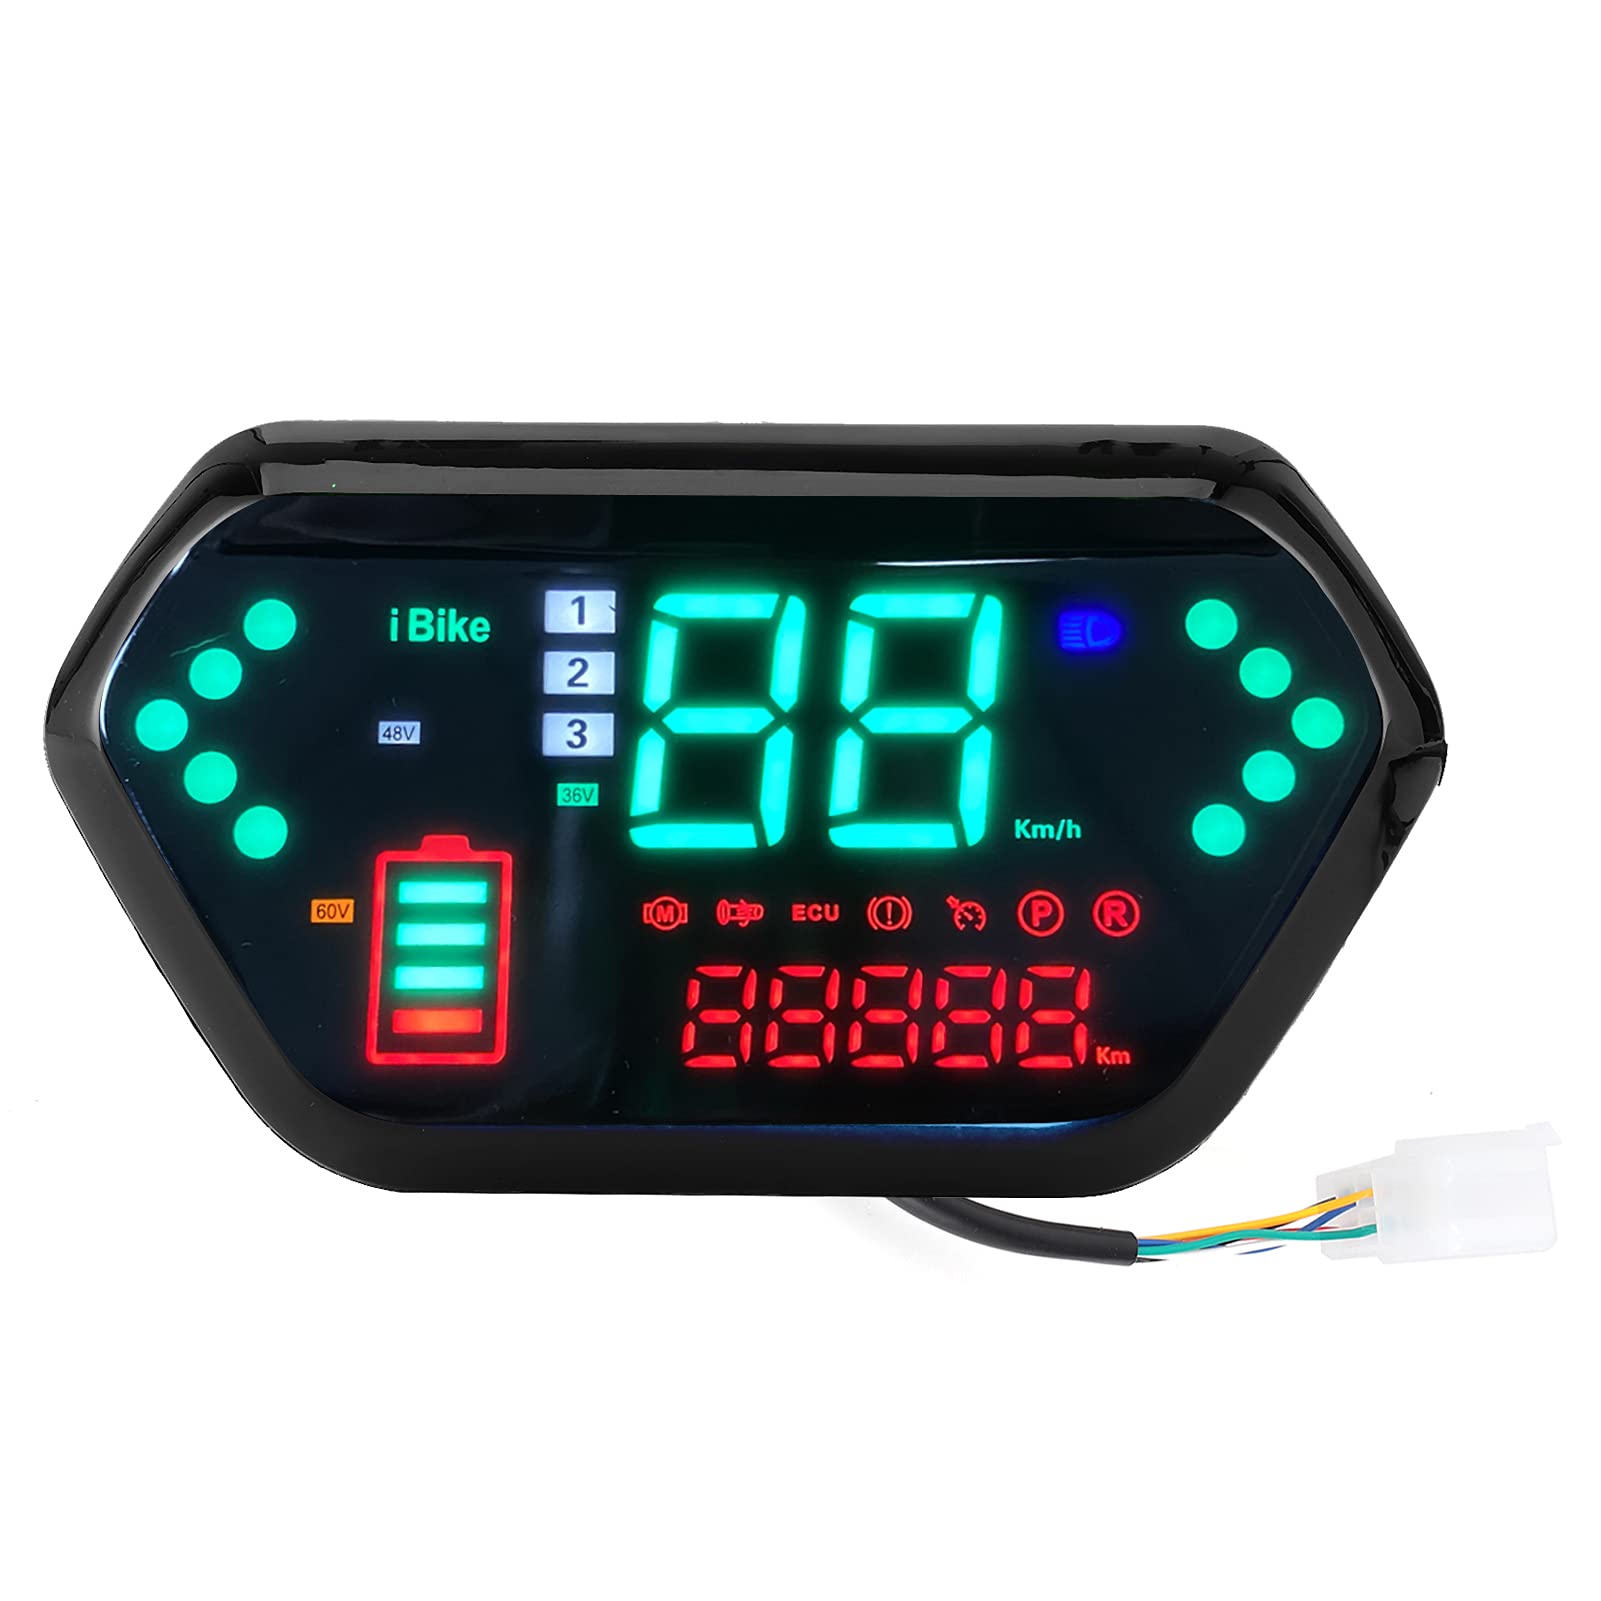 Motorrad-Tachometer, 60V High-Definition-LCD-Display Universal-Motorrad-Tachometer Drehzahlmesser Digitaler Kilometerzähler Motorrad-Geschwindigkeitsmesser Geschwindigkeitsmesser von Keenso